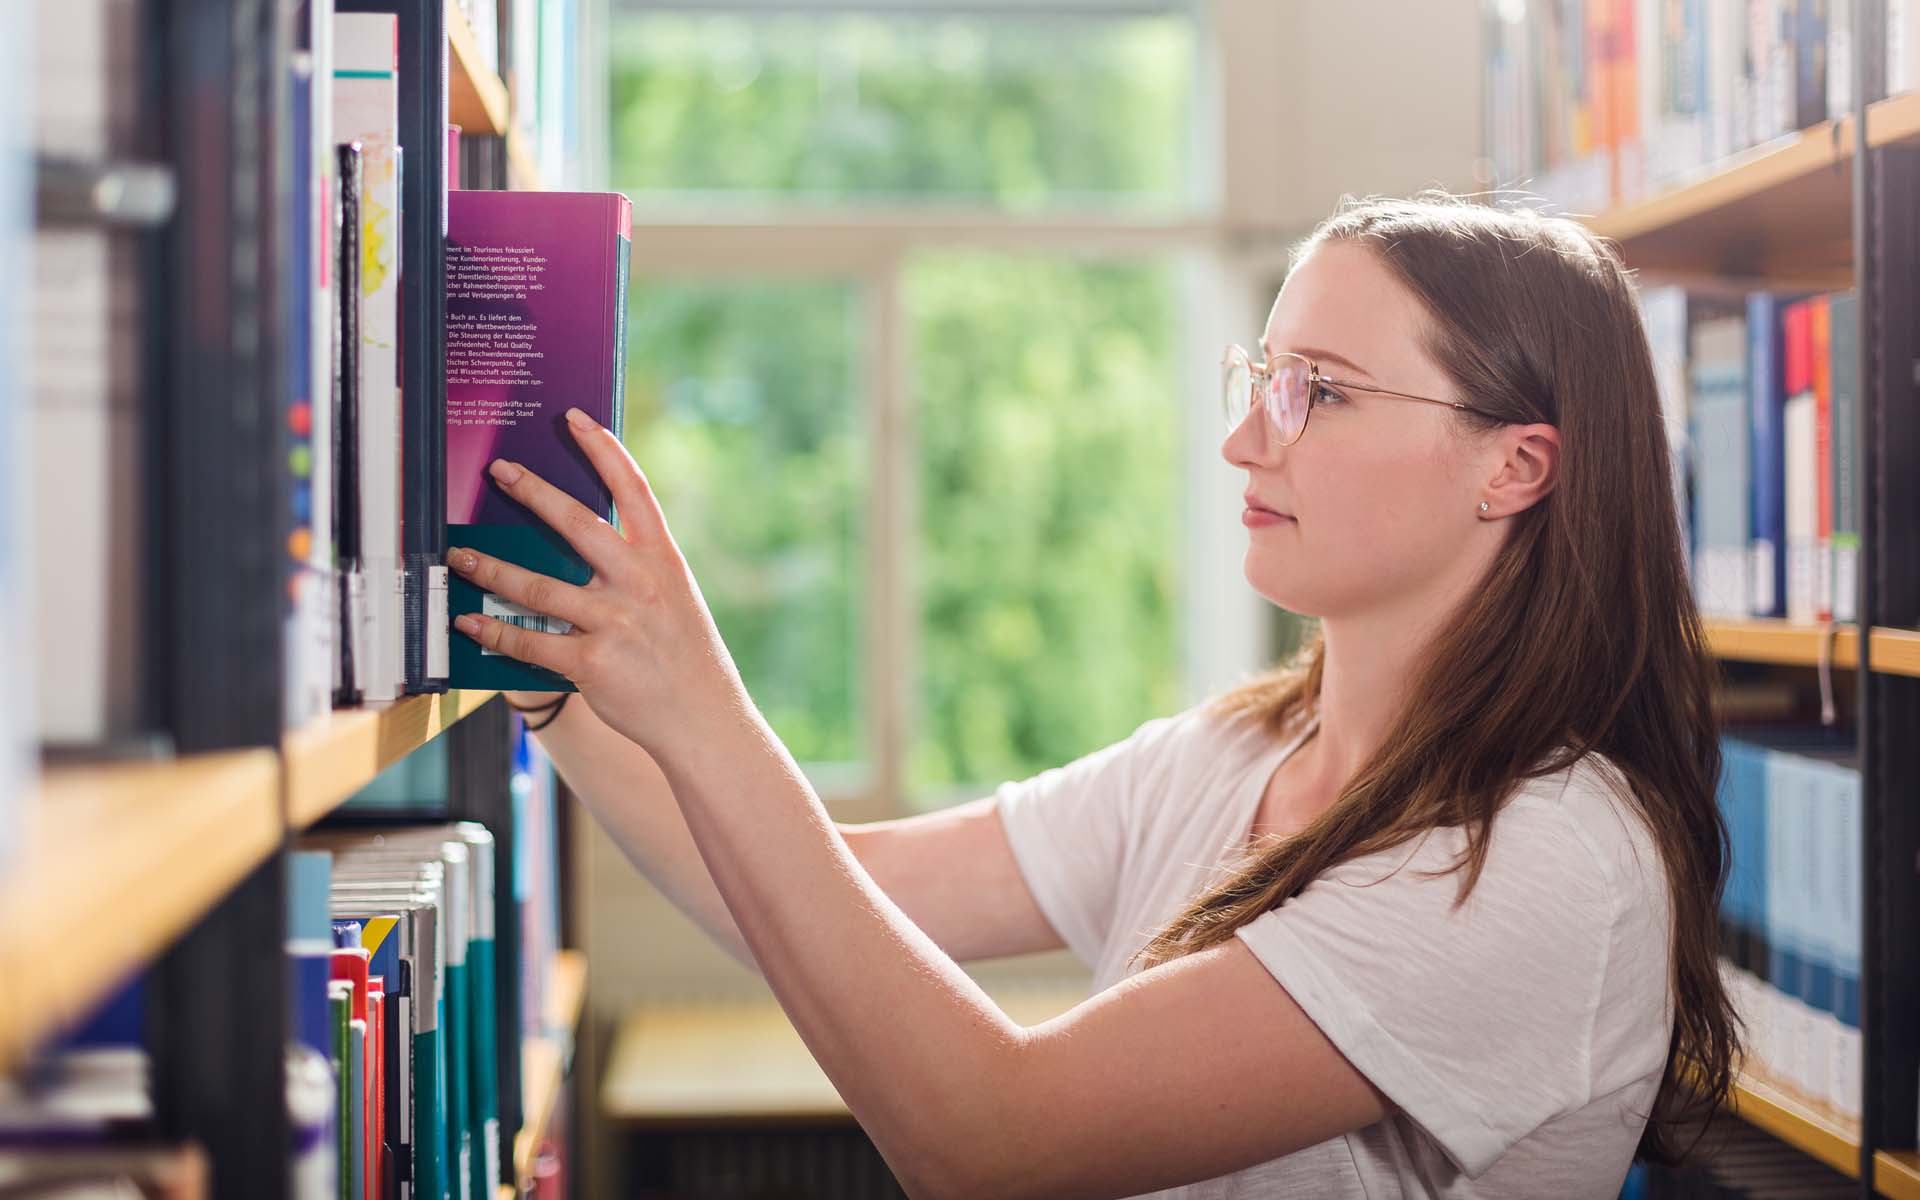 Studentin stellt Buch in Buchregal in der Bibliothek